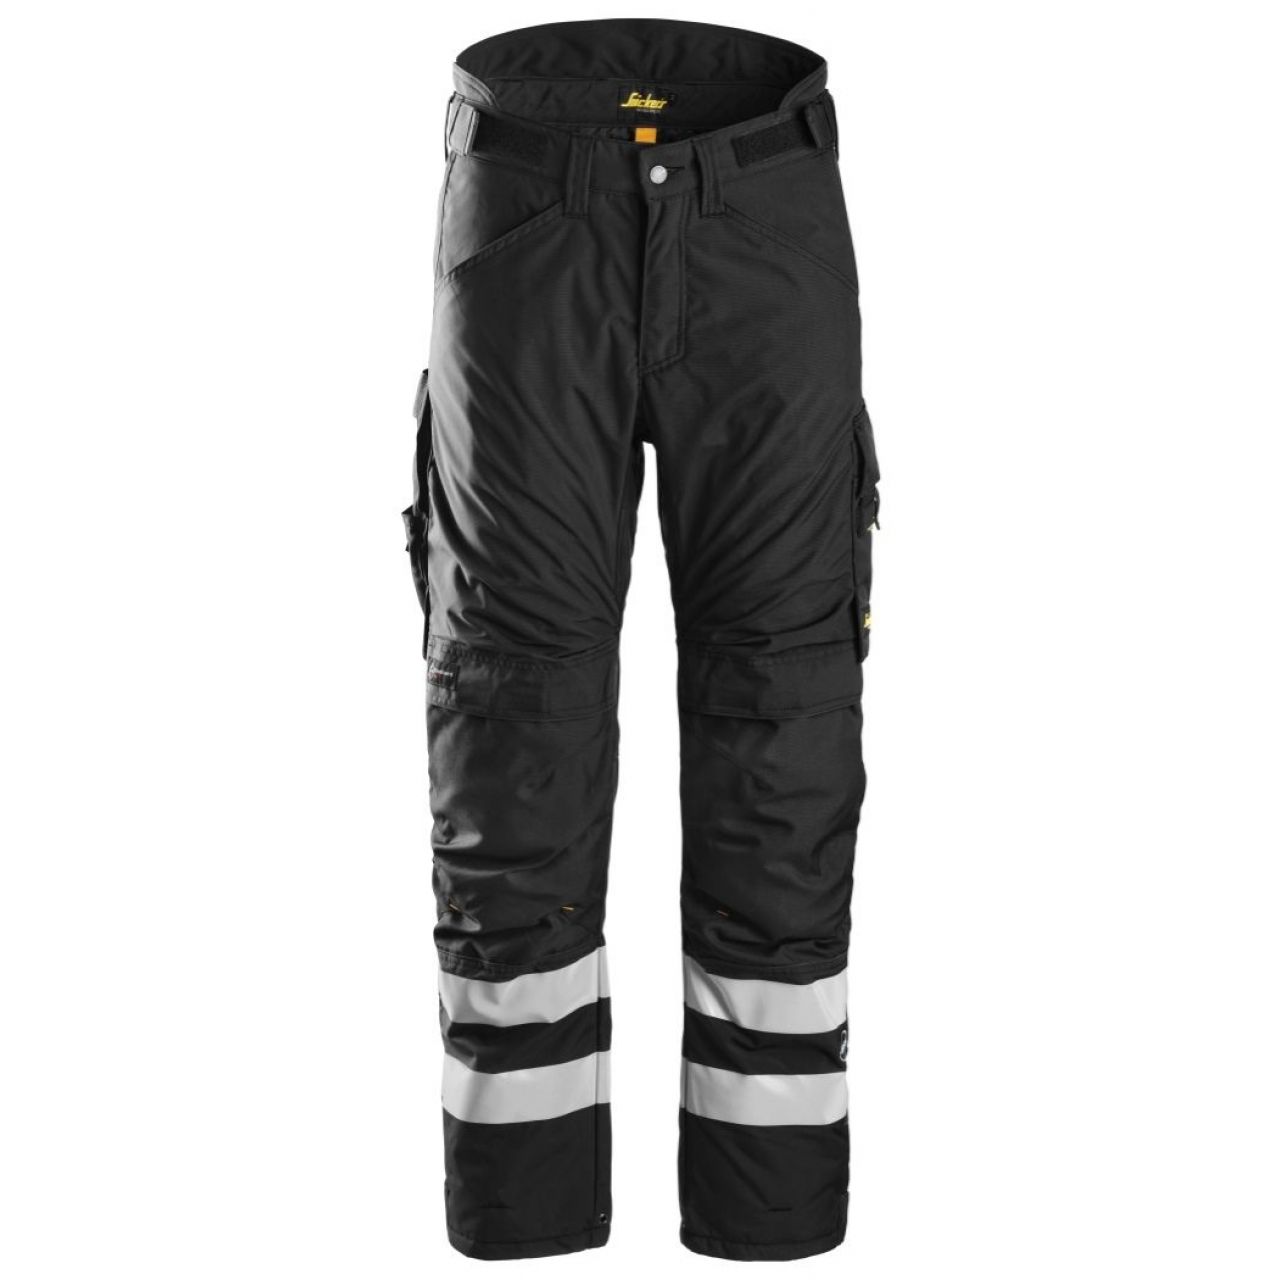 Pantalon aislante AllroundWork 37.5® negro talla XS corto